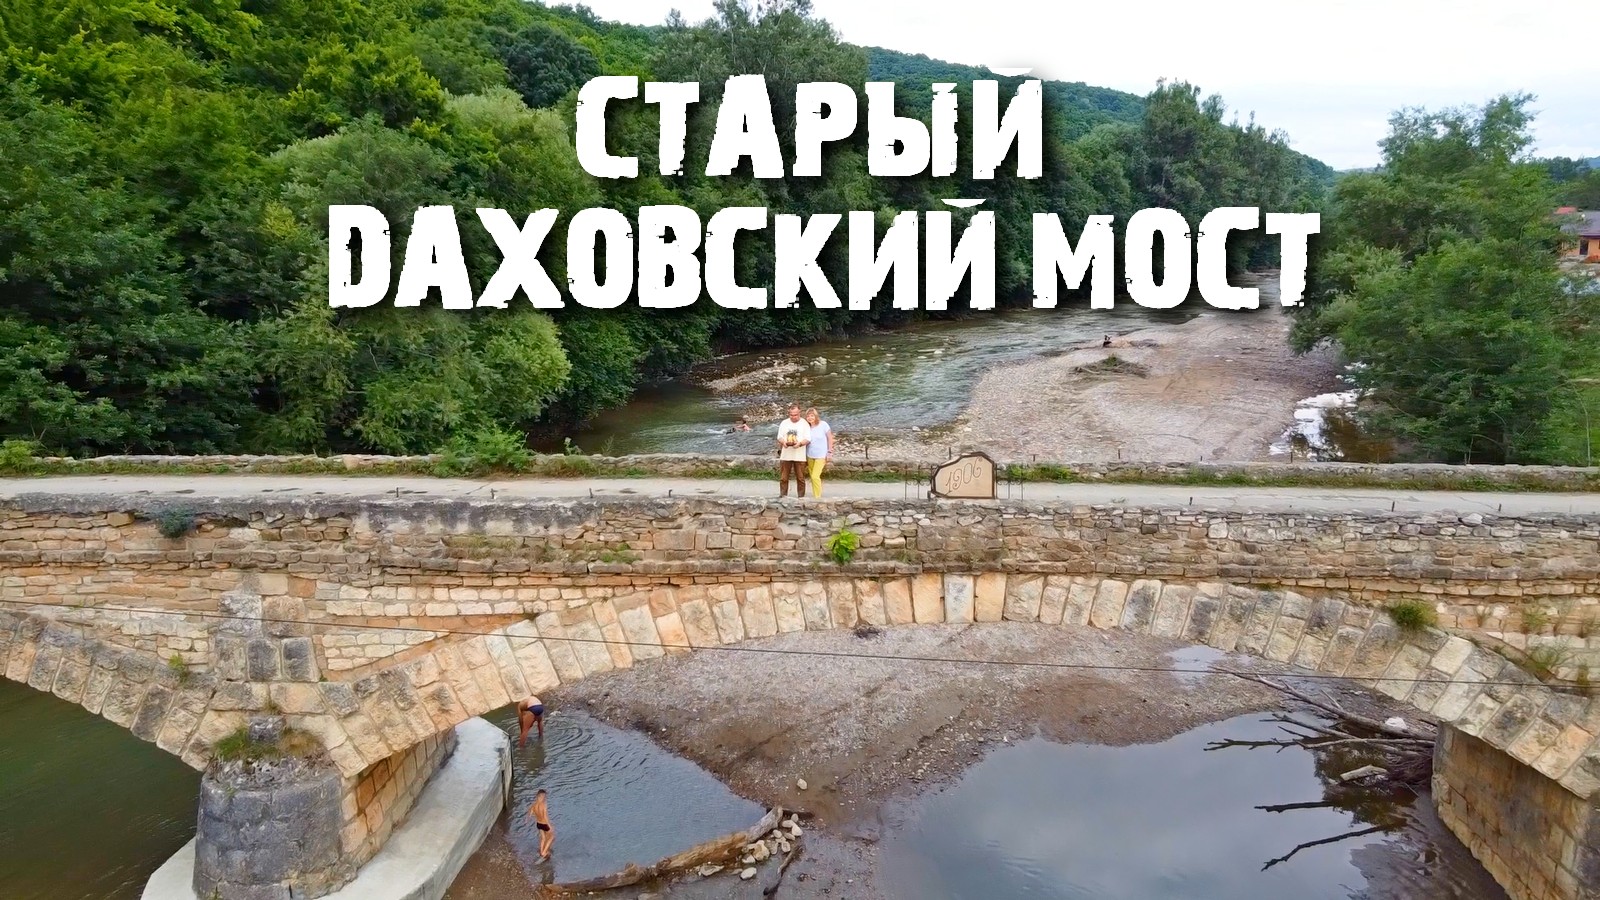 Даховская мост через реку